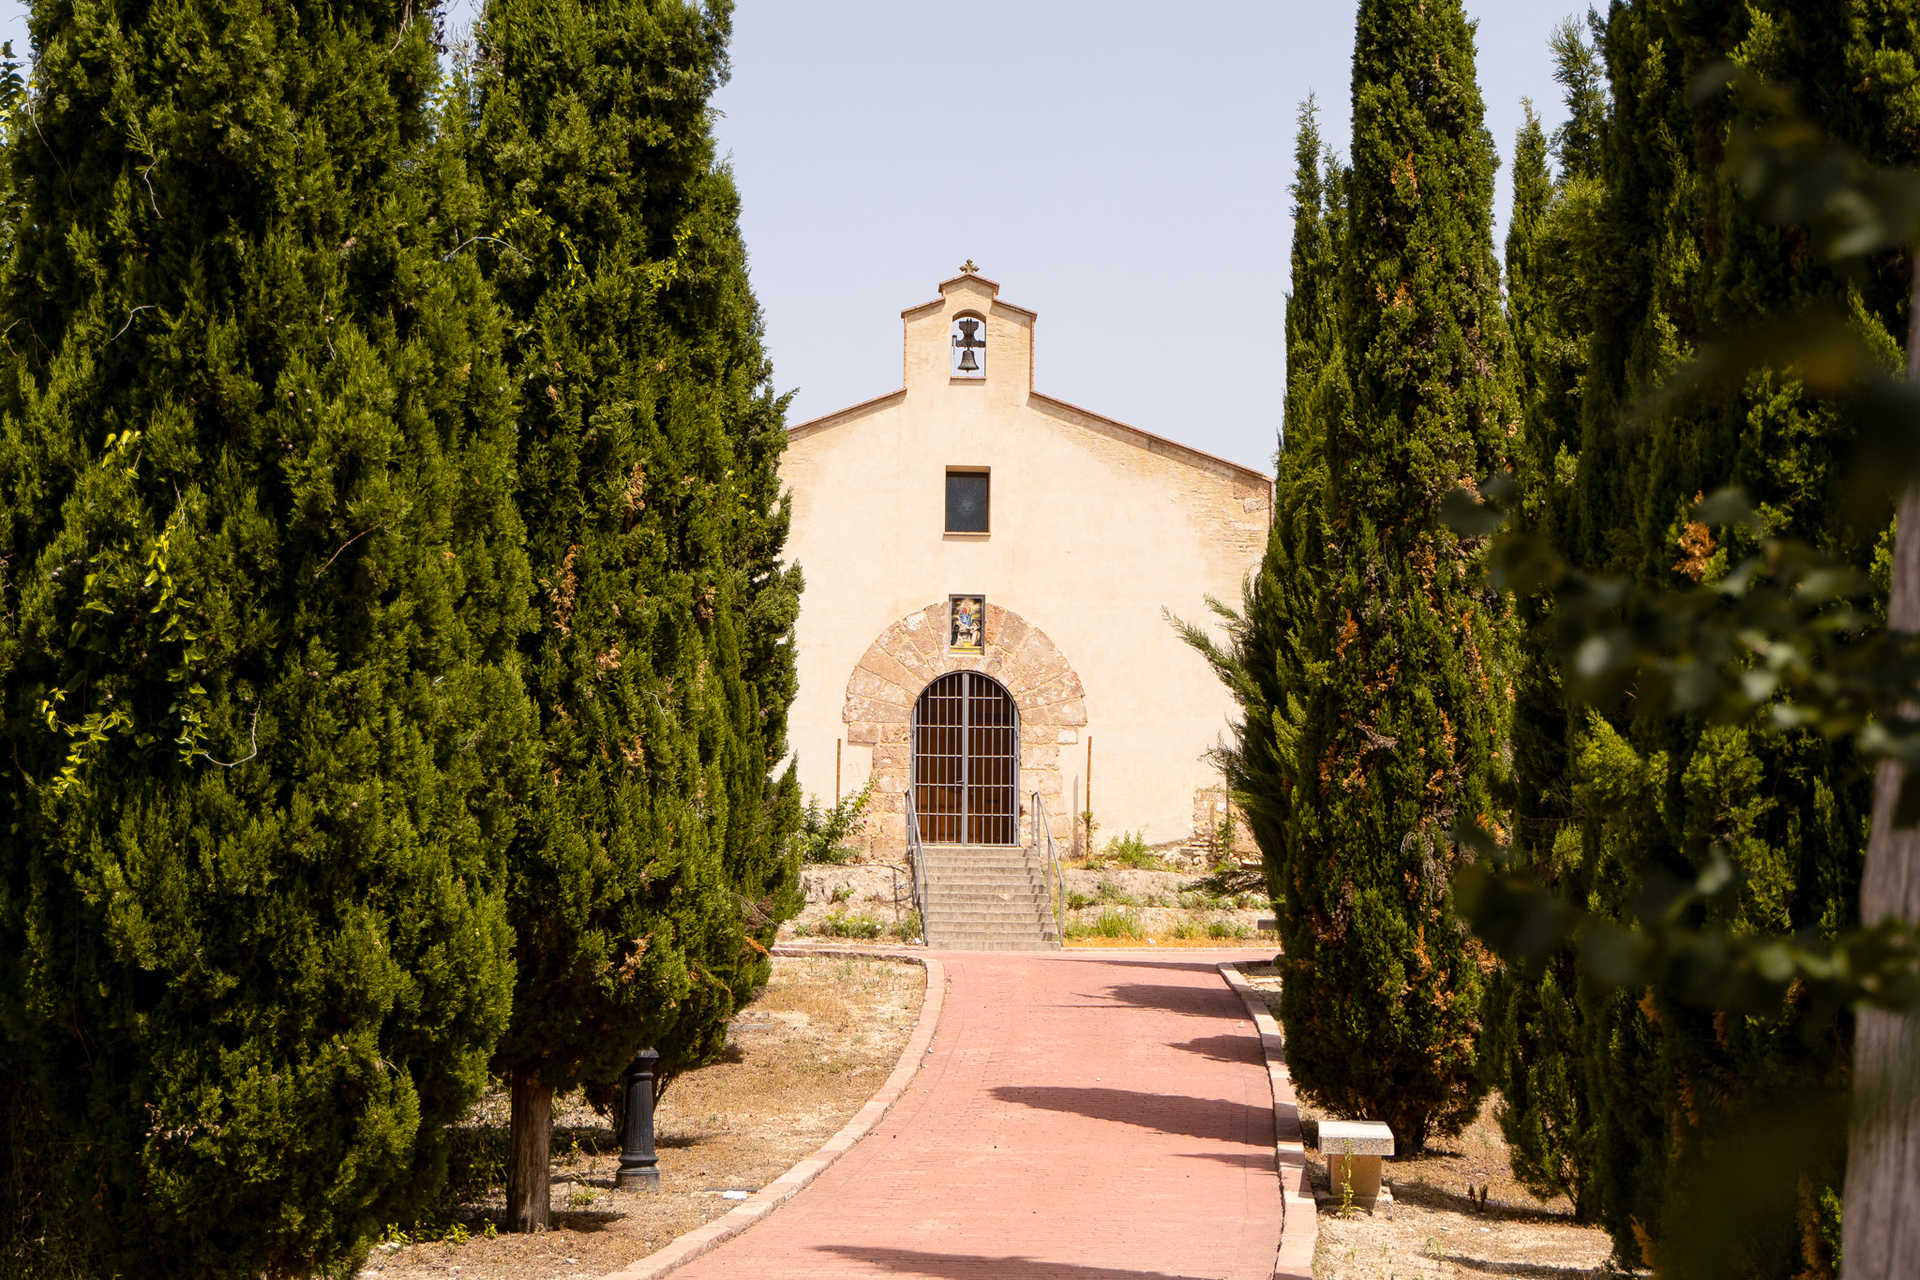  Ermita de Nuestra Señora del Rosario - Albaida